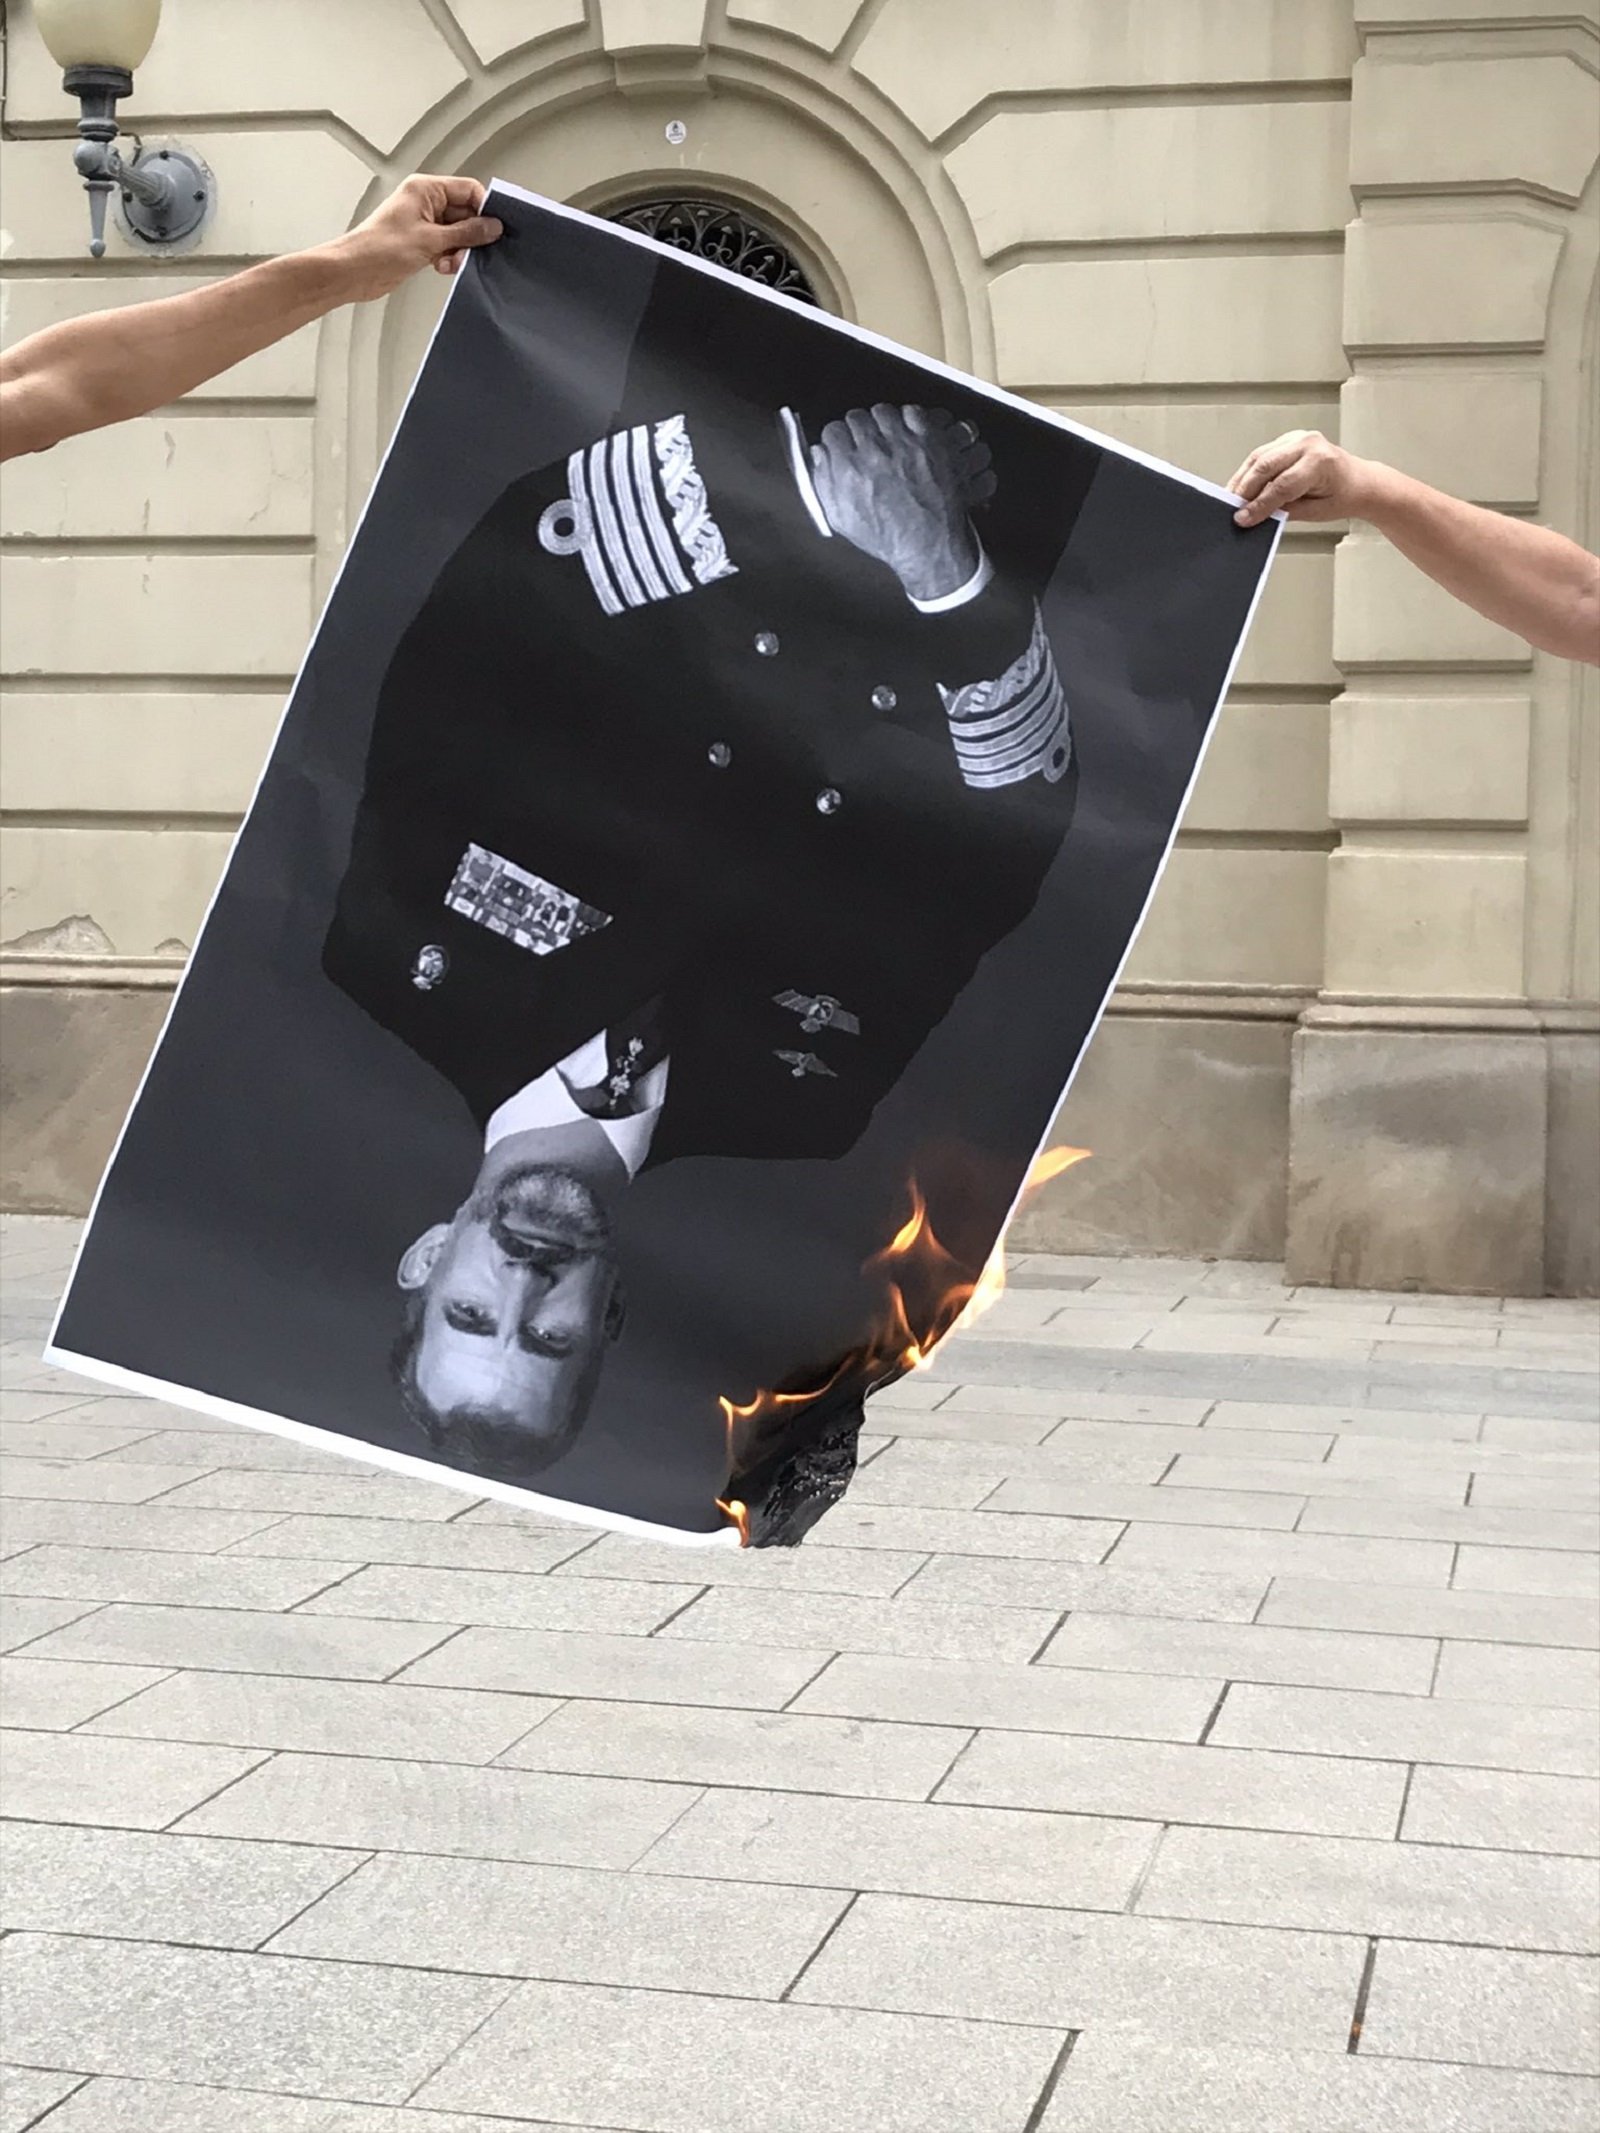 Els CDR preparen una manifestació contra Felip VI a Barcelona: "Foc al Borbó"